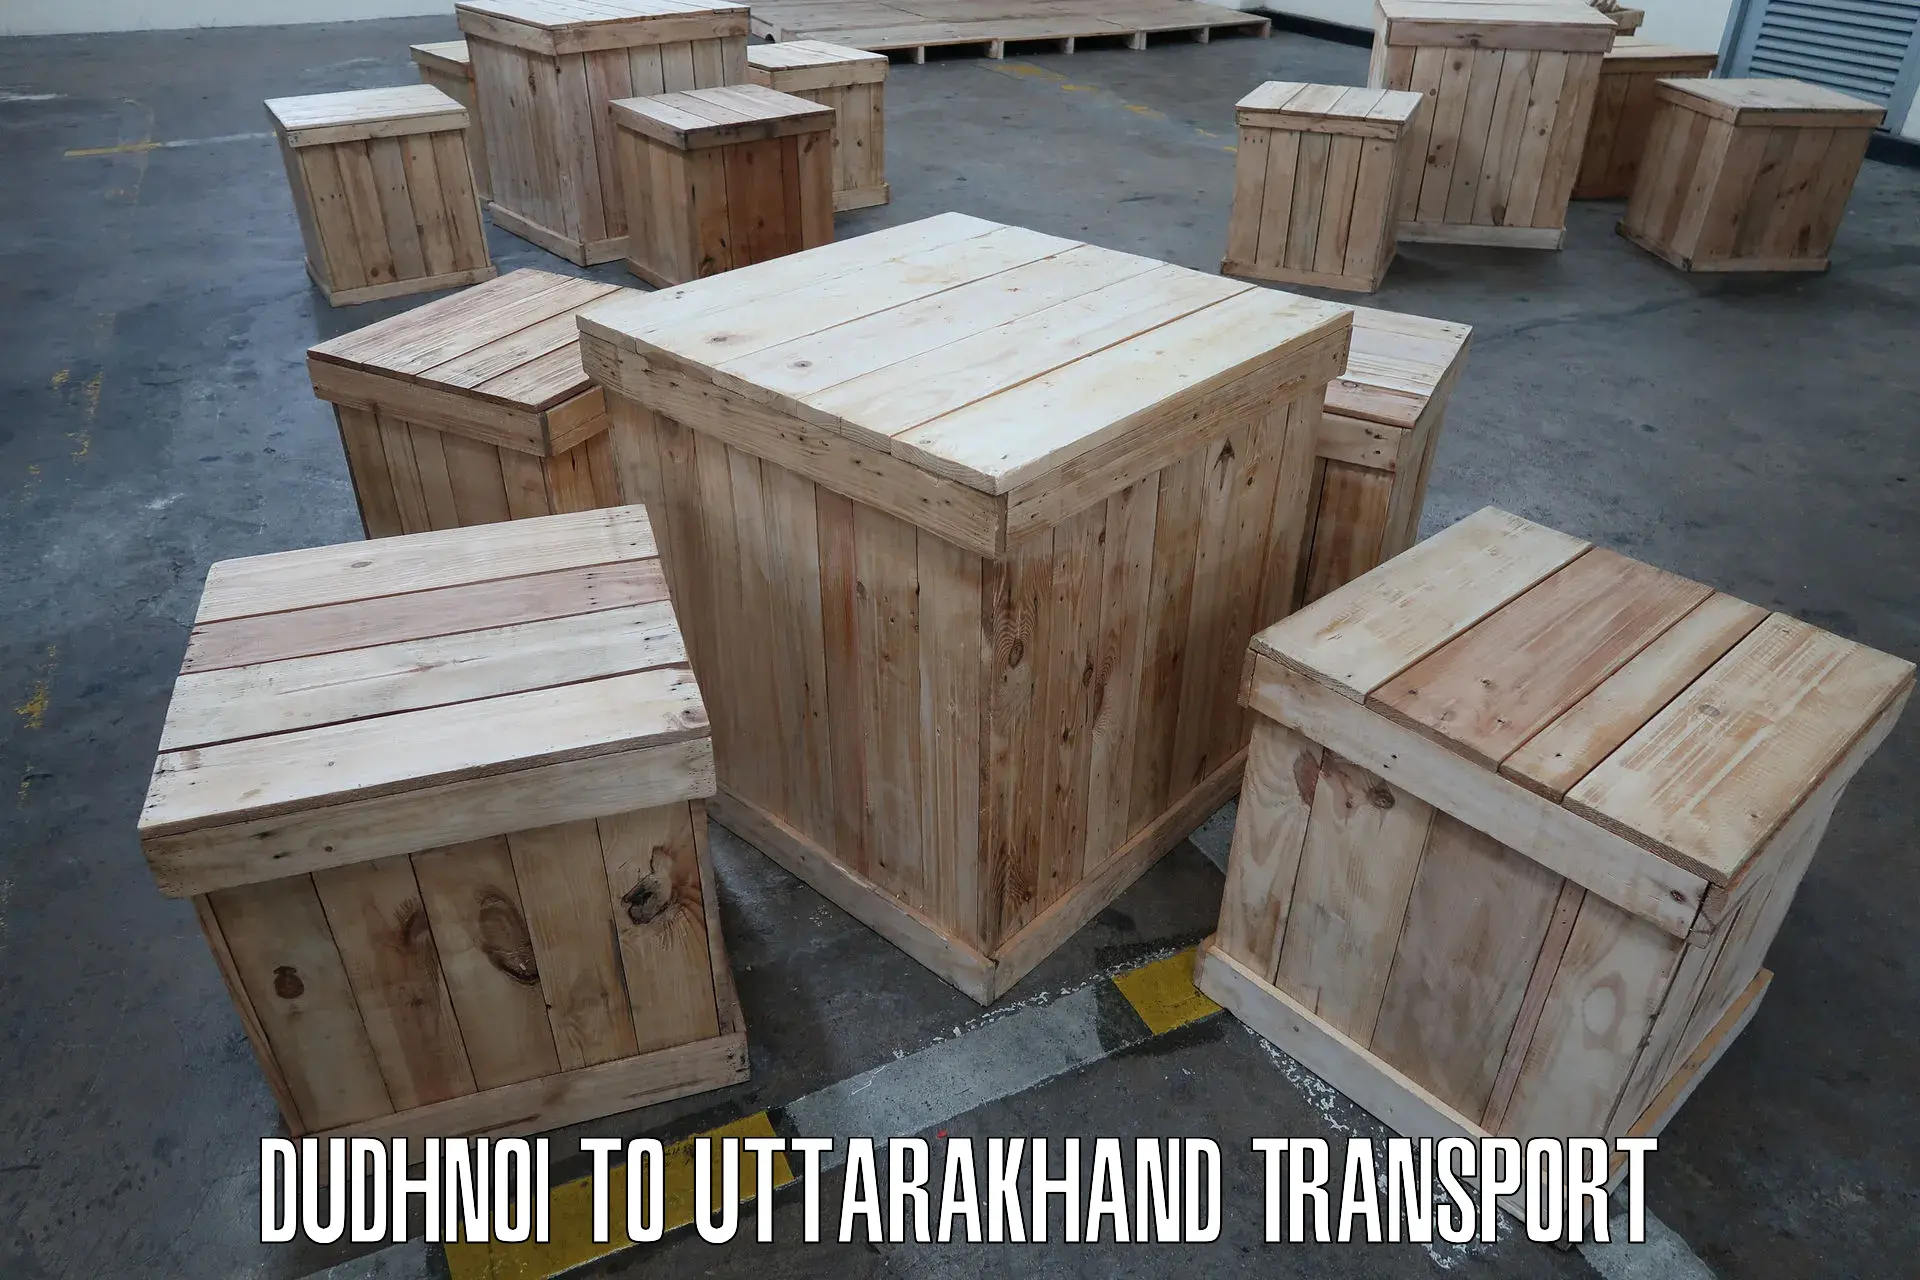 Parcel transport services Dudhnoi to Uttarakhand